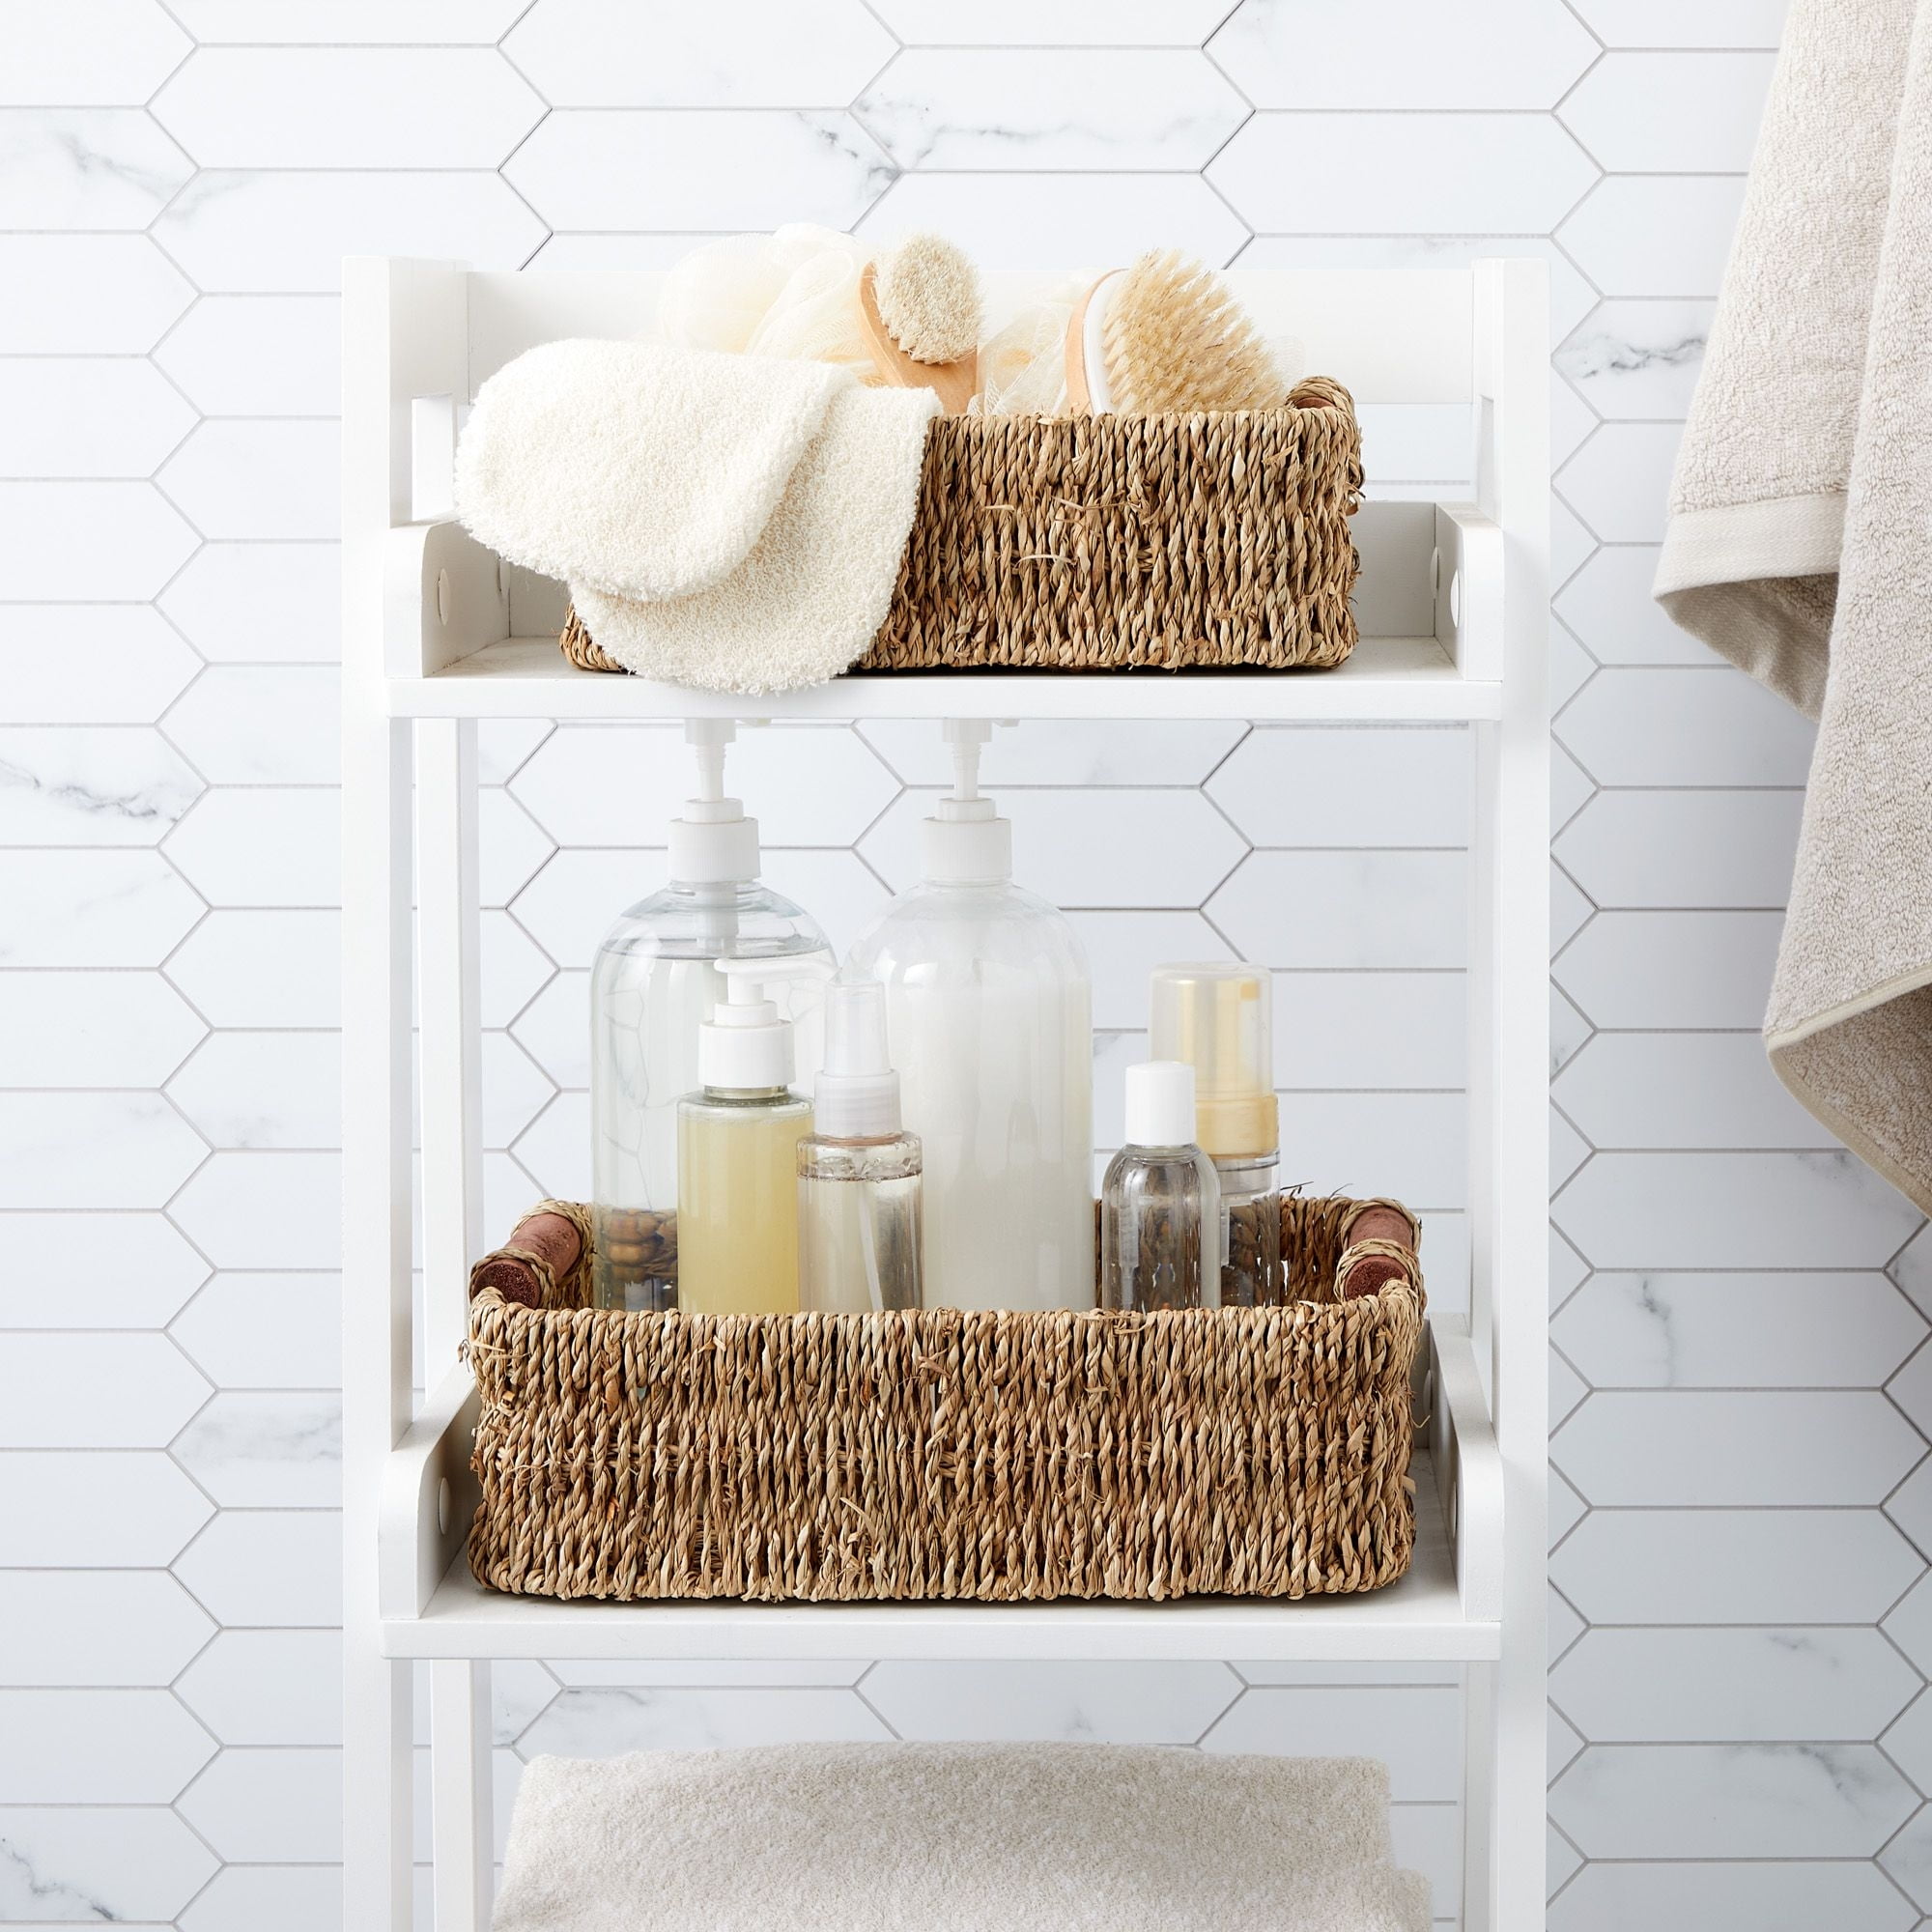 Bathroom Shelf with Towel Bar, Shelf with Toilet Paper Basket, Towel  Baskets for Bathroom Bedroom, Living Room, Kitchen, Office Decor, Brown Set  of 4